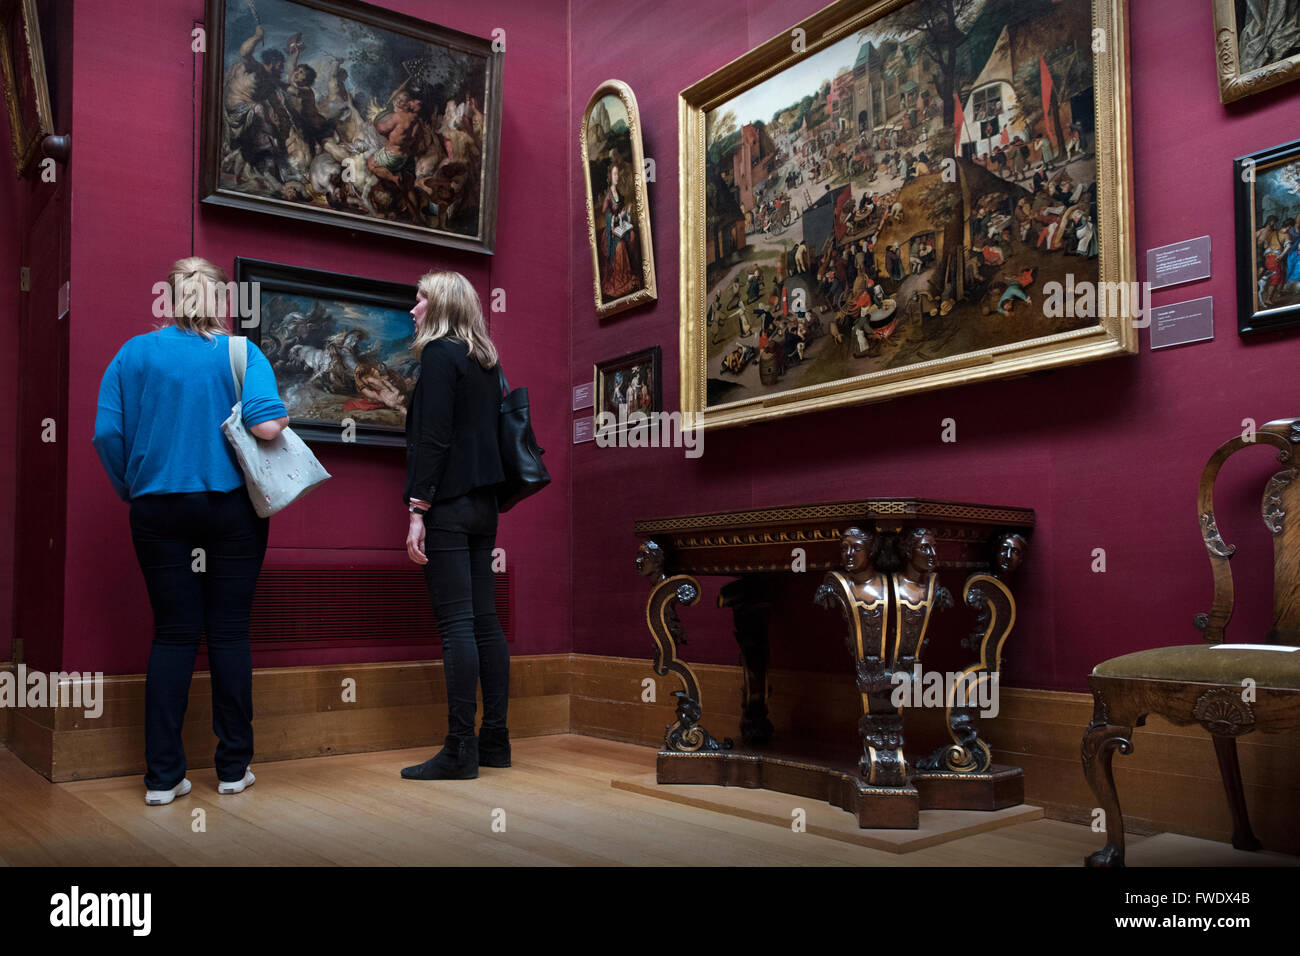 Fitzwilliam Museum and Art Gallery, Cambridge, England UK. April 2016 Gemälde von Rubens auf links und A Dorffest Peter Brueghel dem jüngeren auf richtige The Fitzwilliam feiert seinen 200. Geburtstag im Jahr 2016 Stockfoto